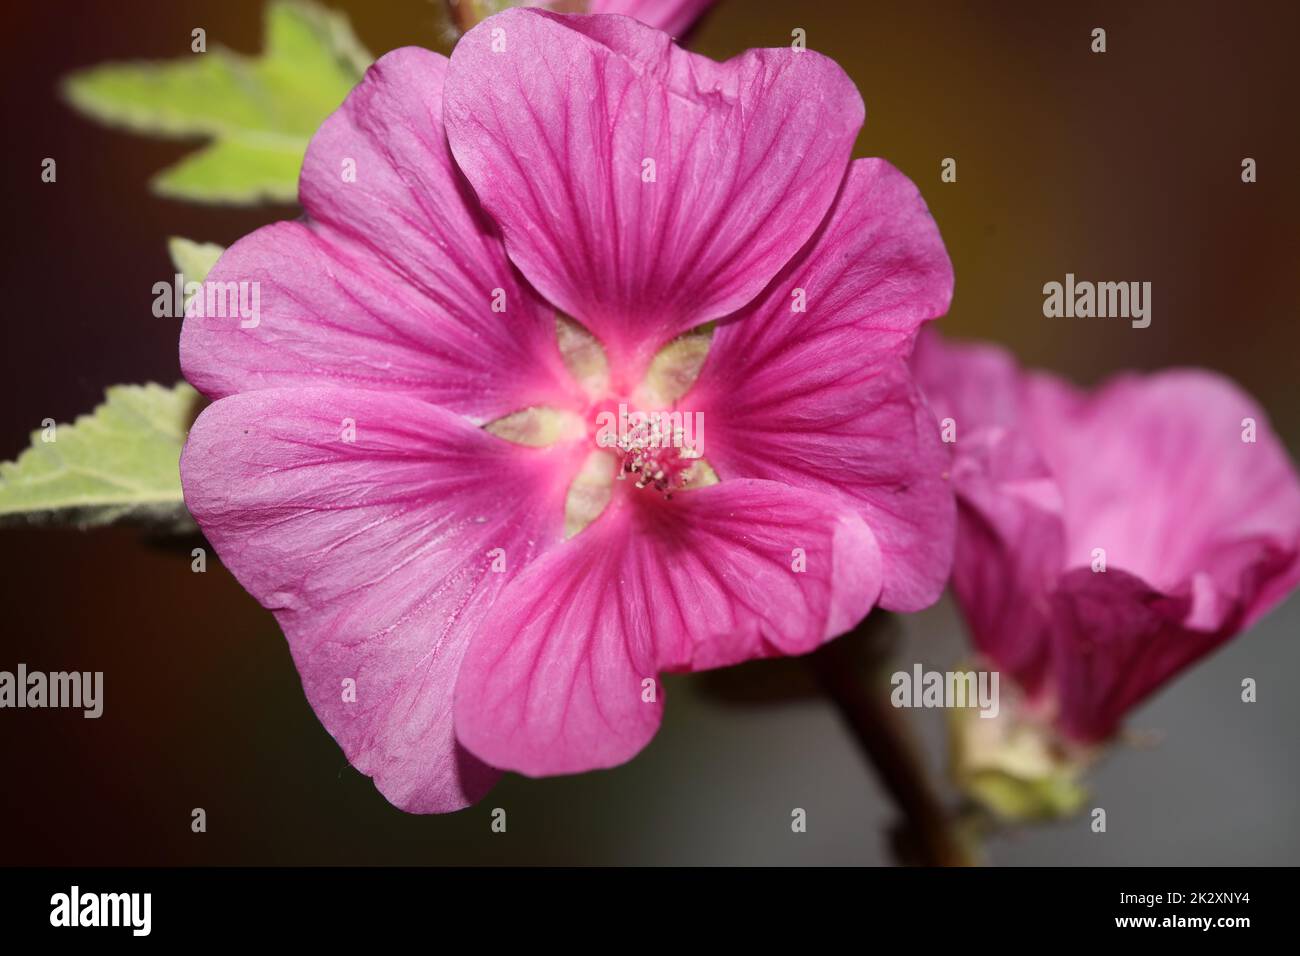 Viola fiore selvaggio primo piano malva arborea famiglia malvaceae moderno sfondo botanico alta qualità grande stampa Foto Stock